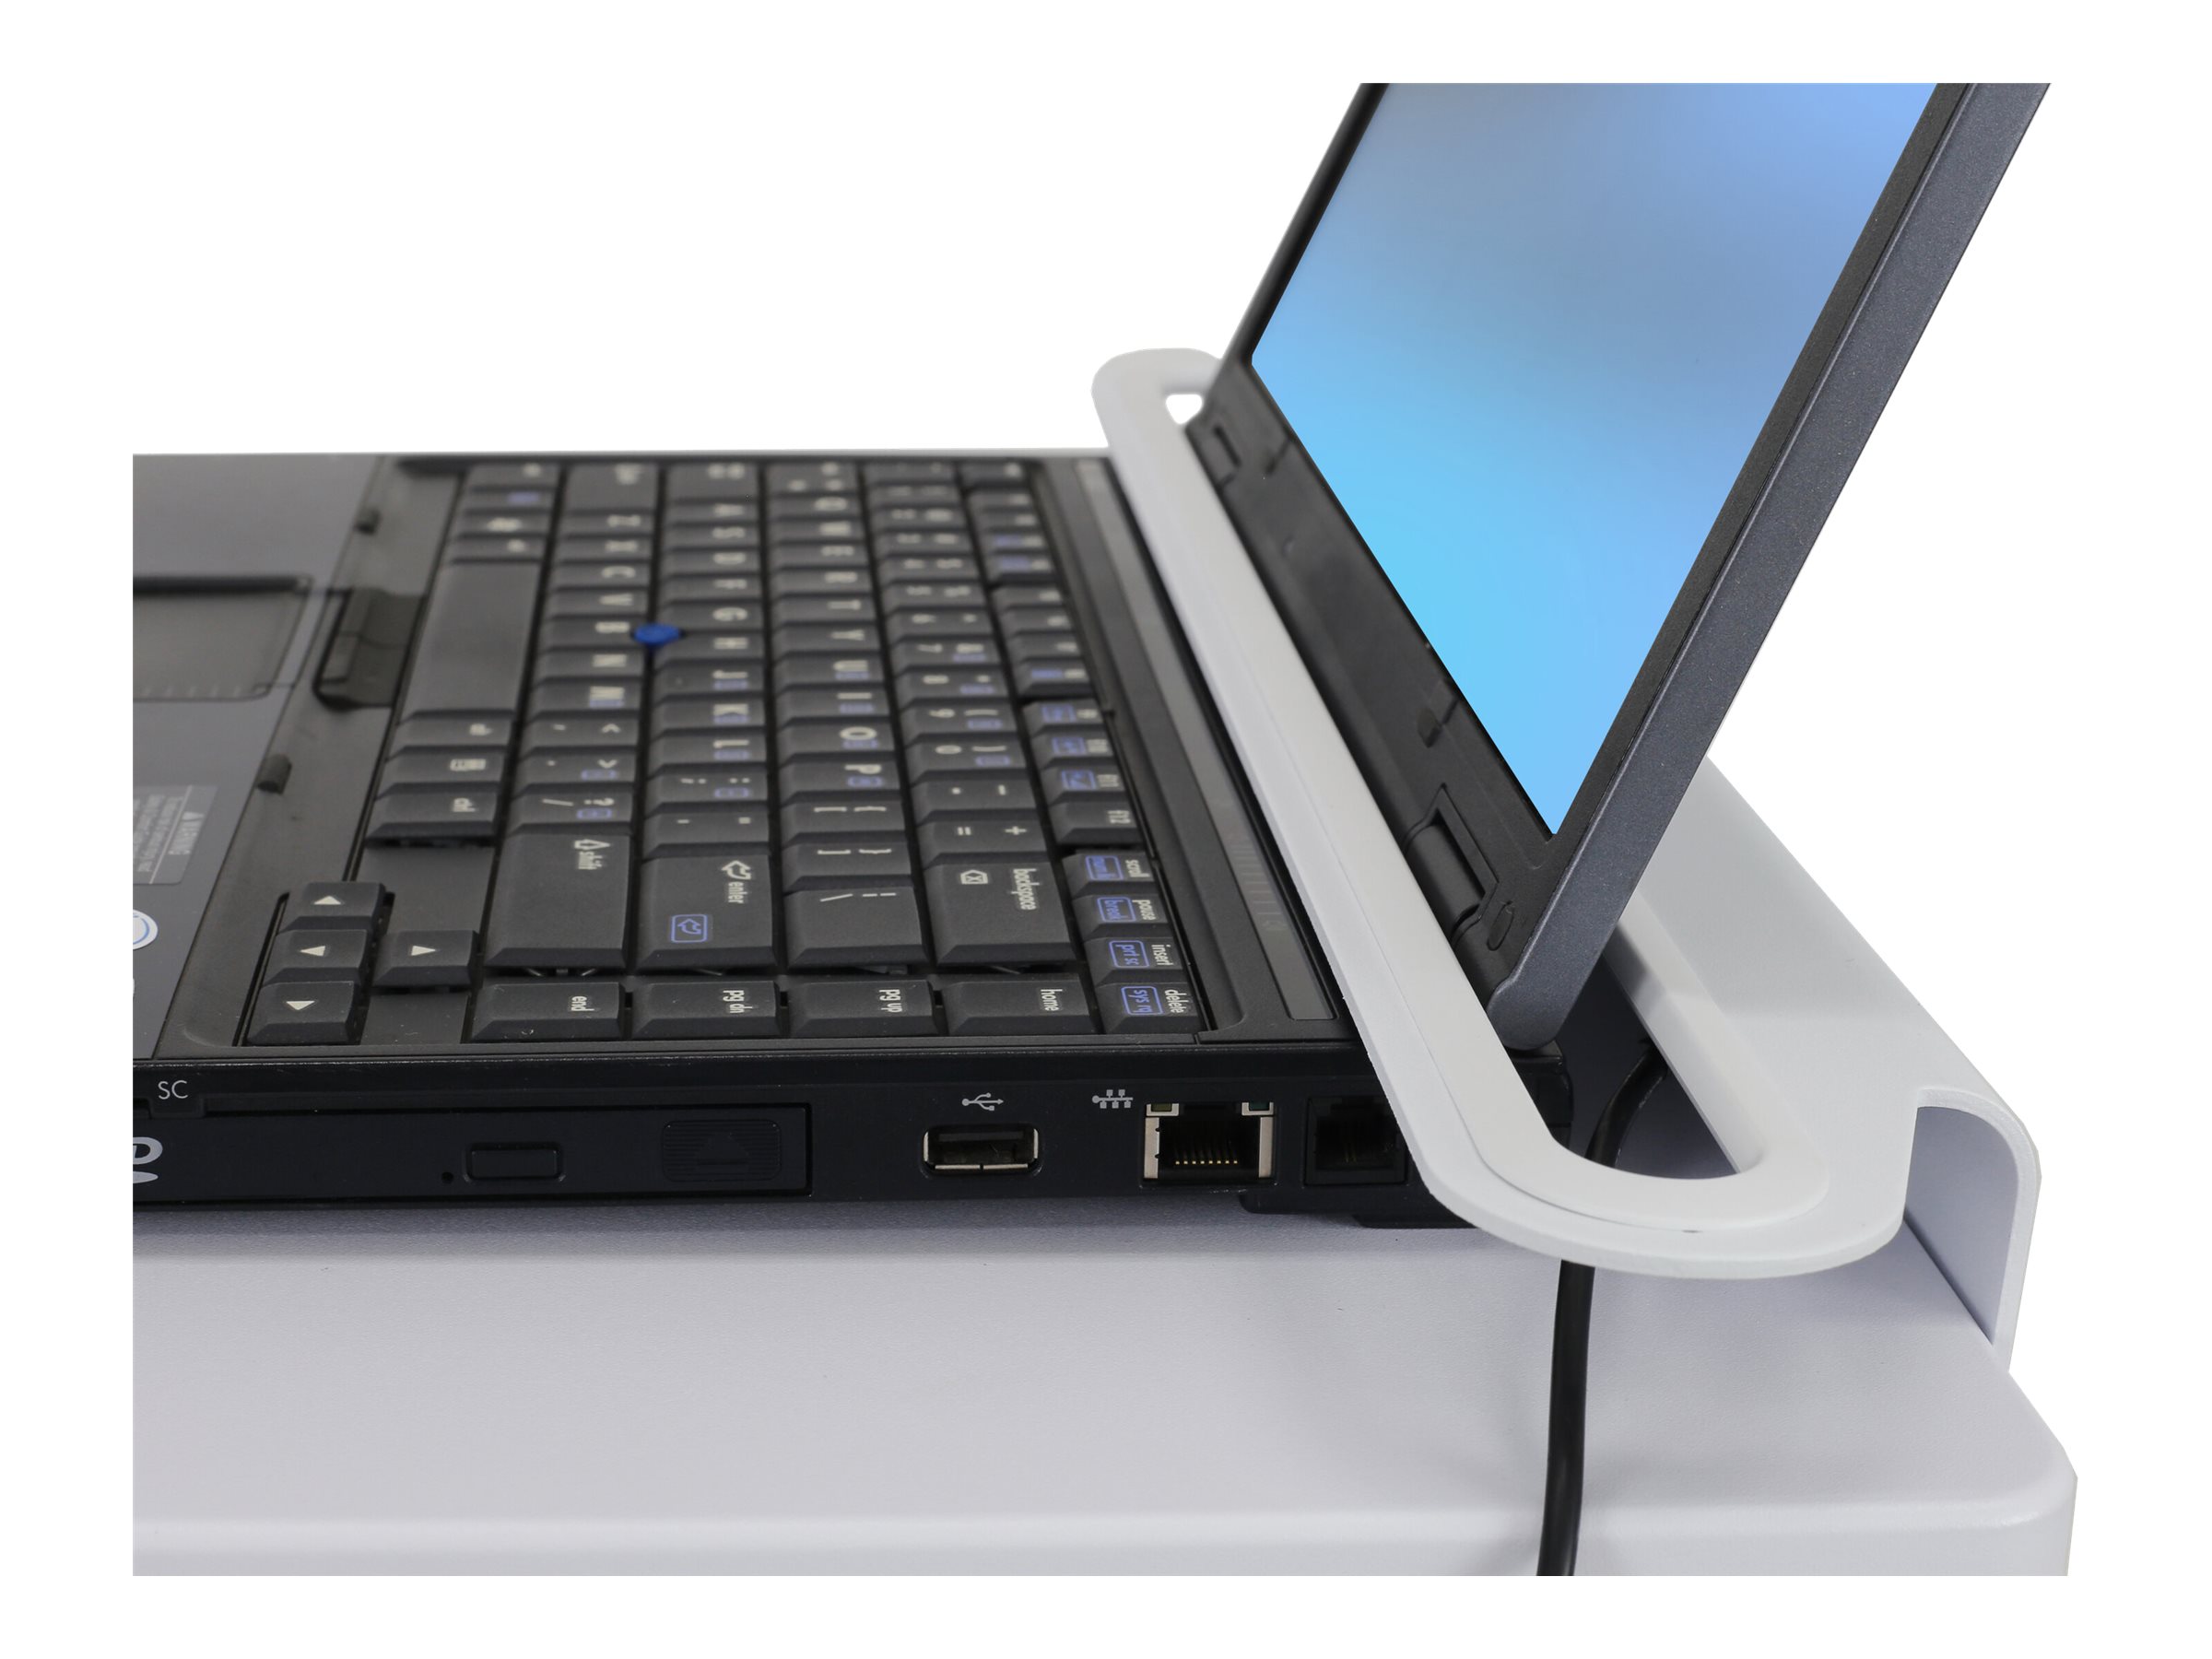 Ergotron - Chariot - service léger - pour ordinateur portable/scanner de codes-barres - médical - acier - blanc, aluminium - Taille d'écran : jusqu'à 17 pouces - SV10-1100-0 - Accessoires pour scanner